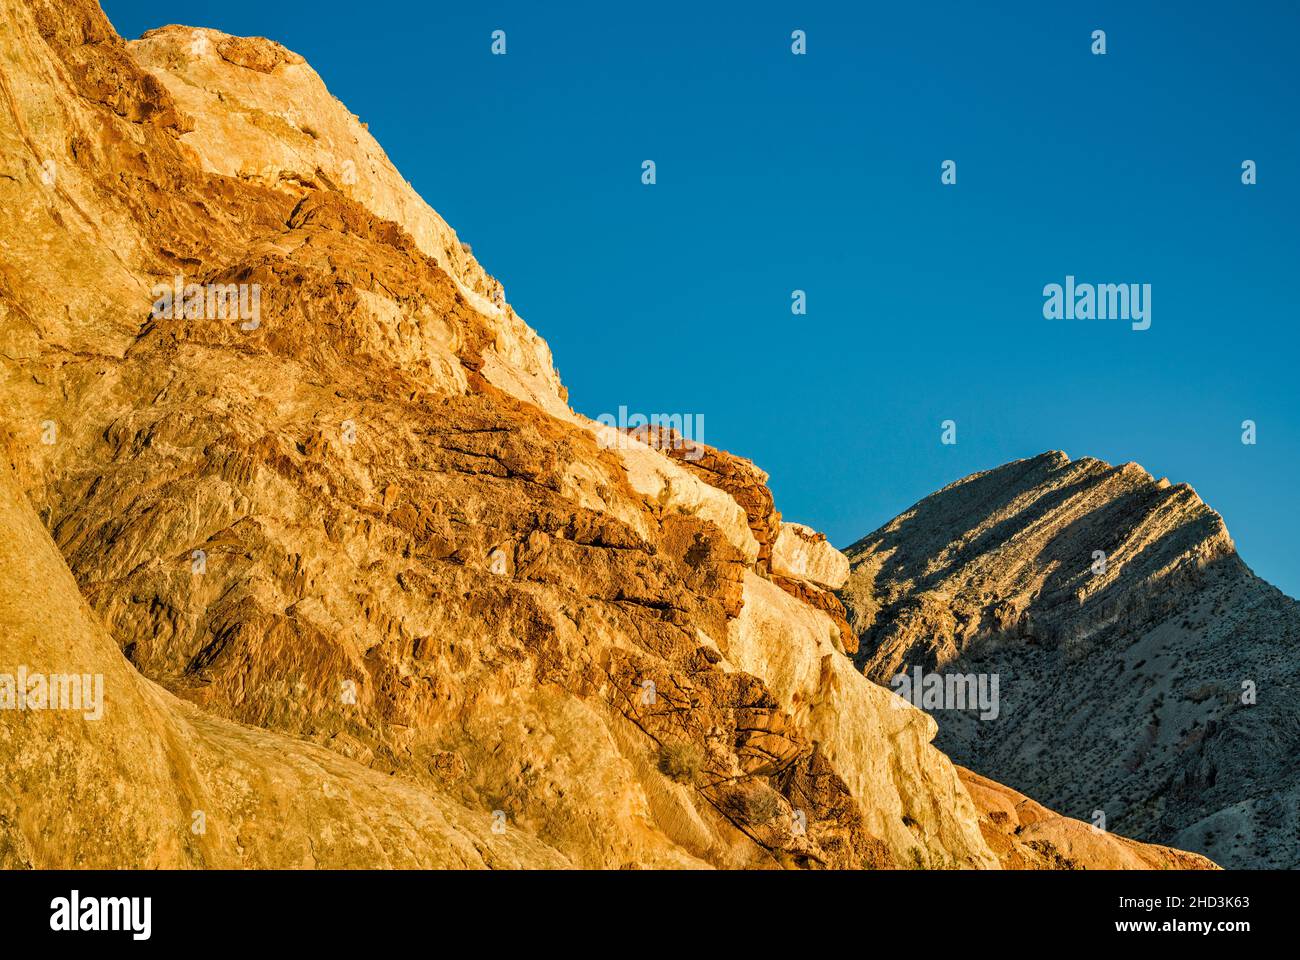 Jurassische Sandsteinfelsen, paläozoisches marines Kalksteinmassiv, Sonnenaufgang, Whitney Pocket Area, Gold Butte National Monument, Mojave Desert, Nevada, USA Stockfoto